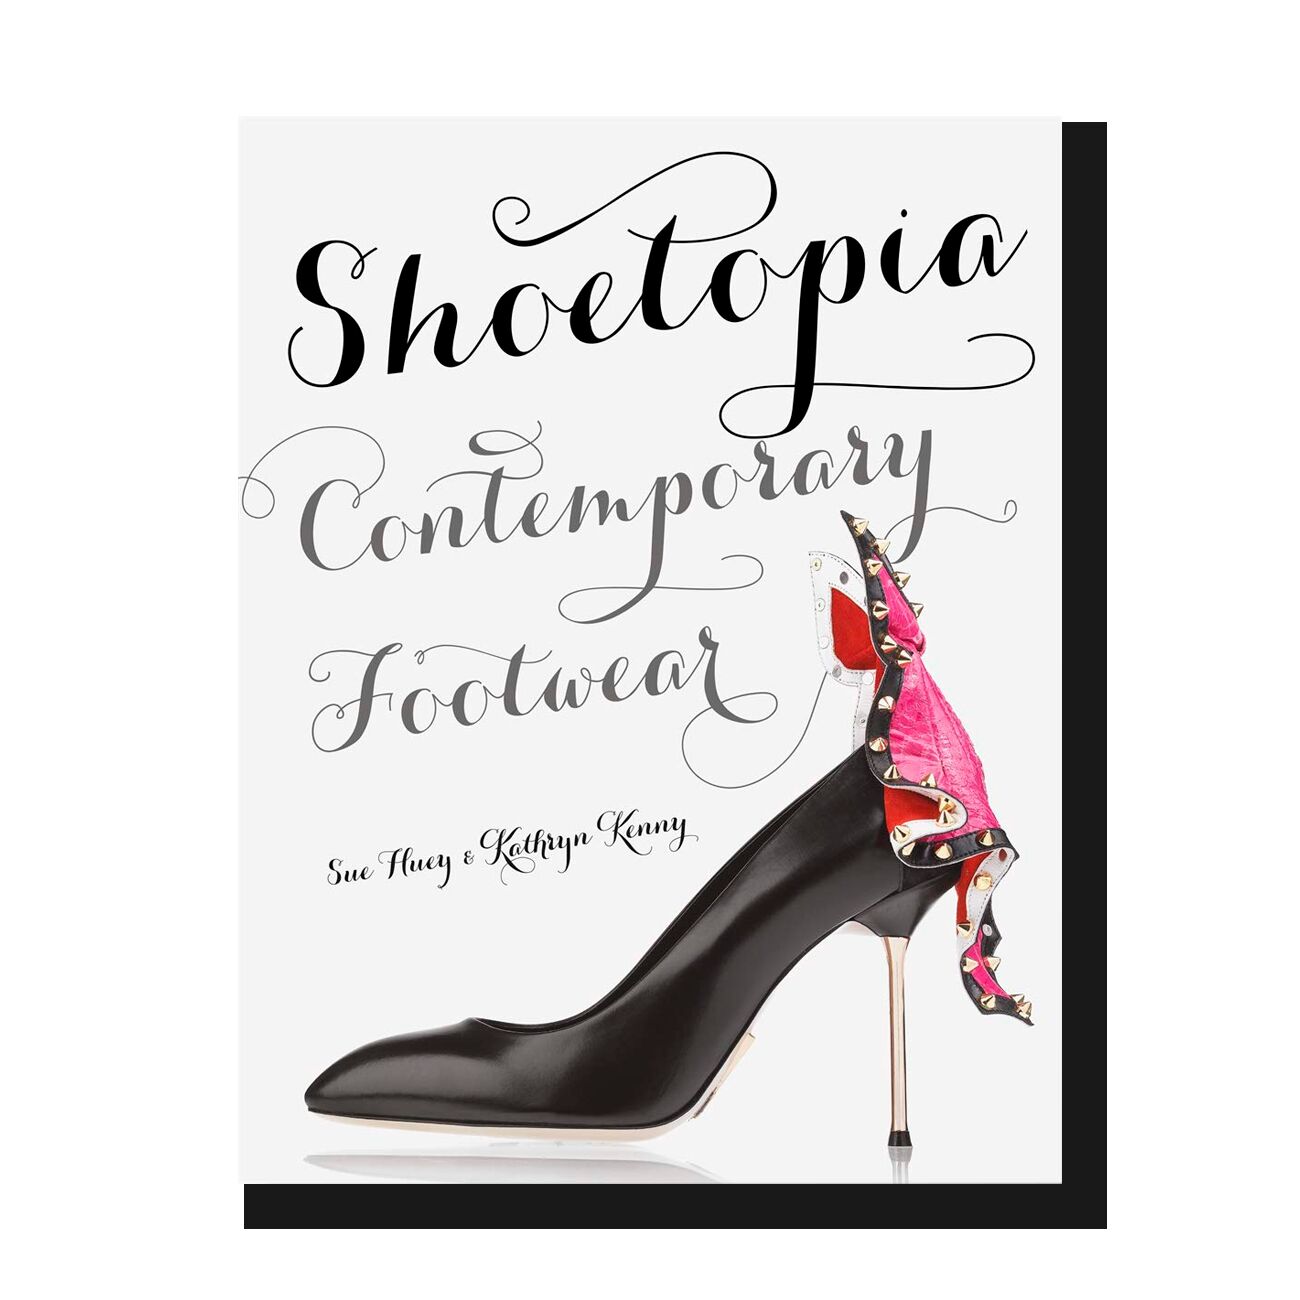 Shoetopia: Contemporary Footwear